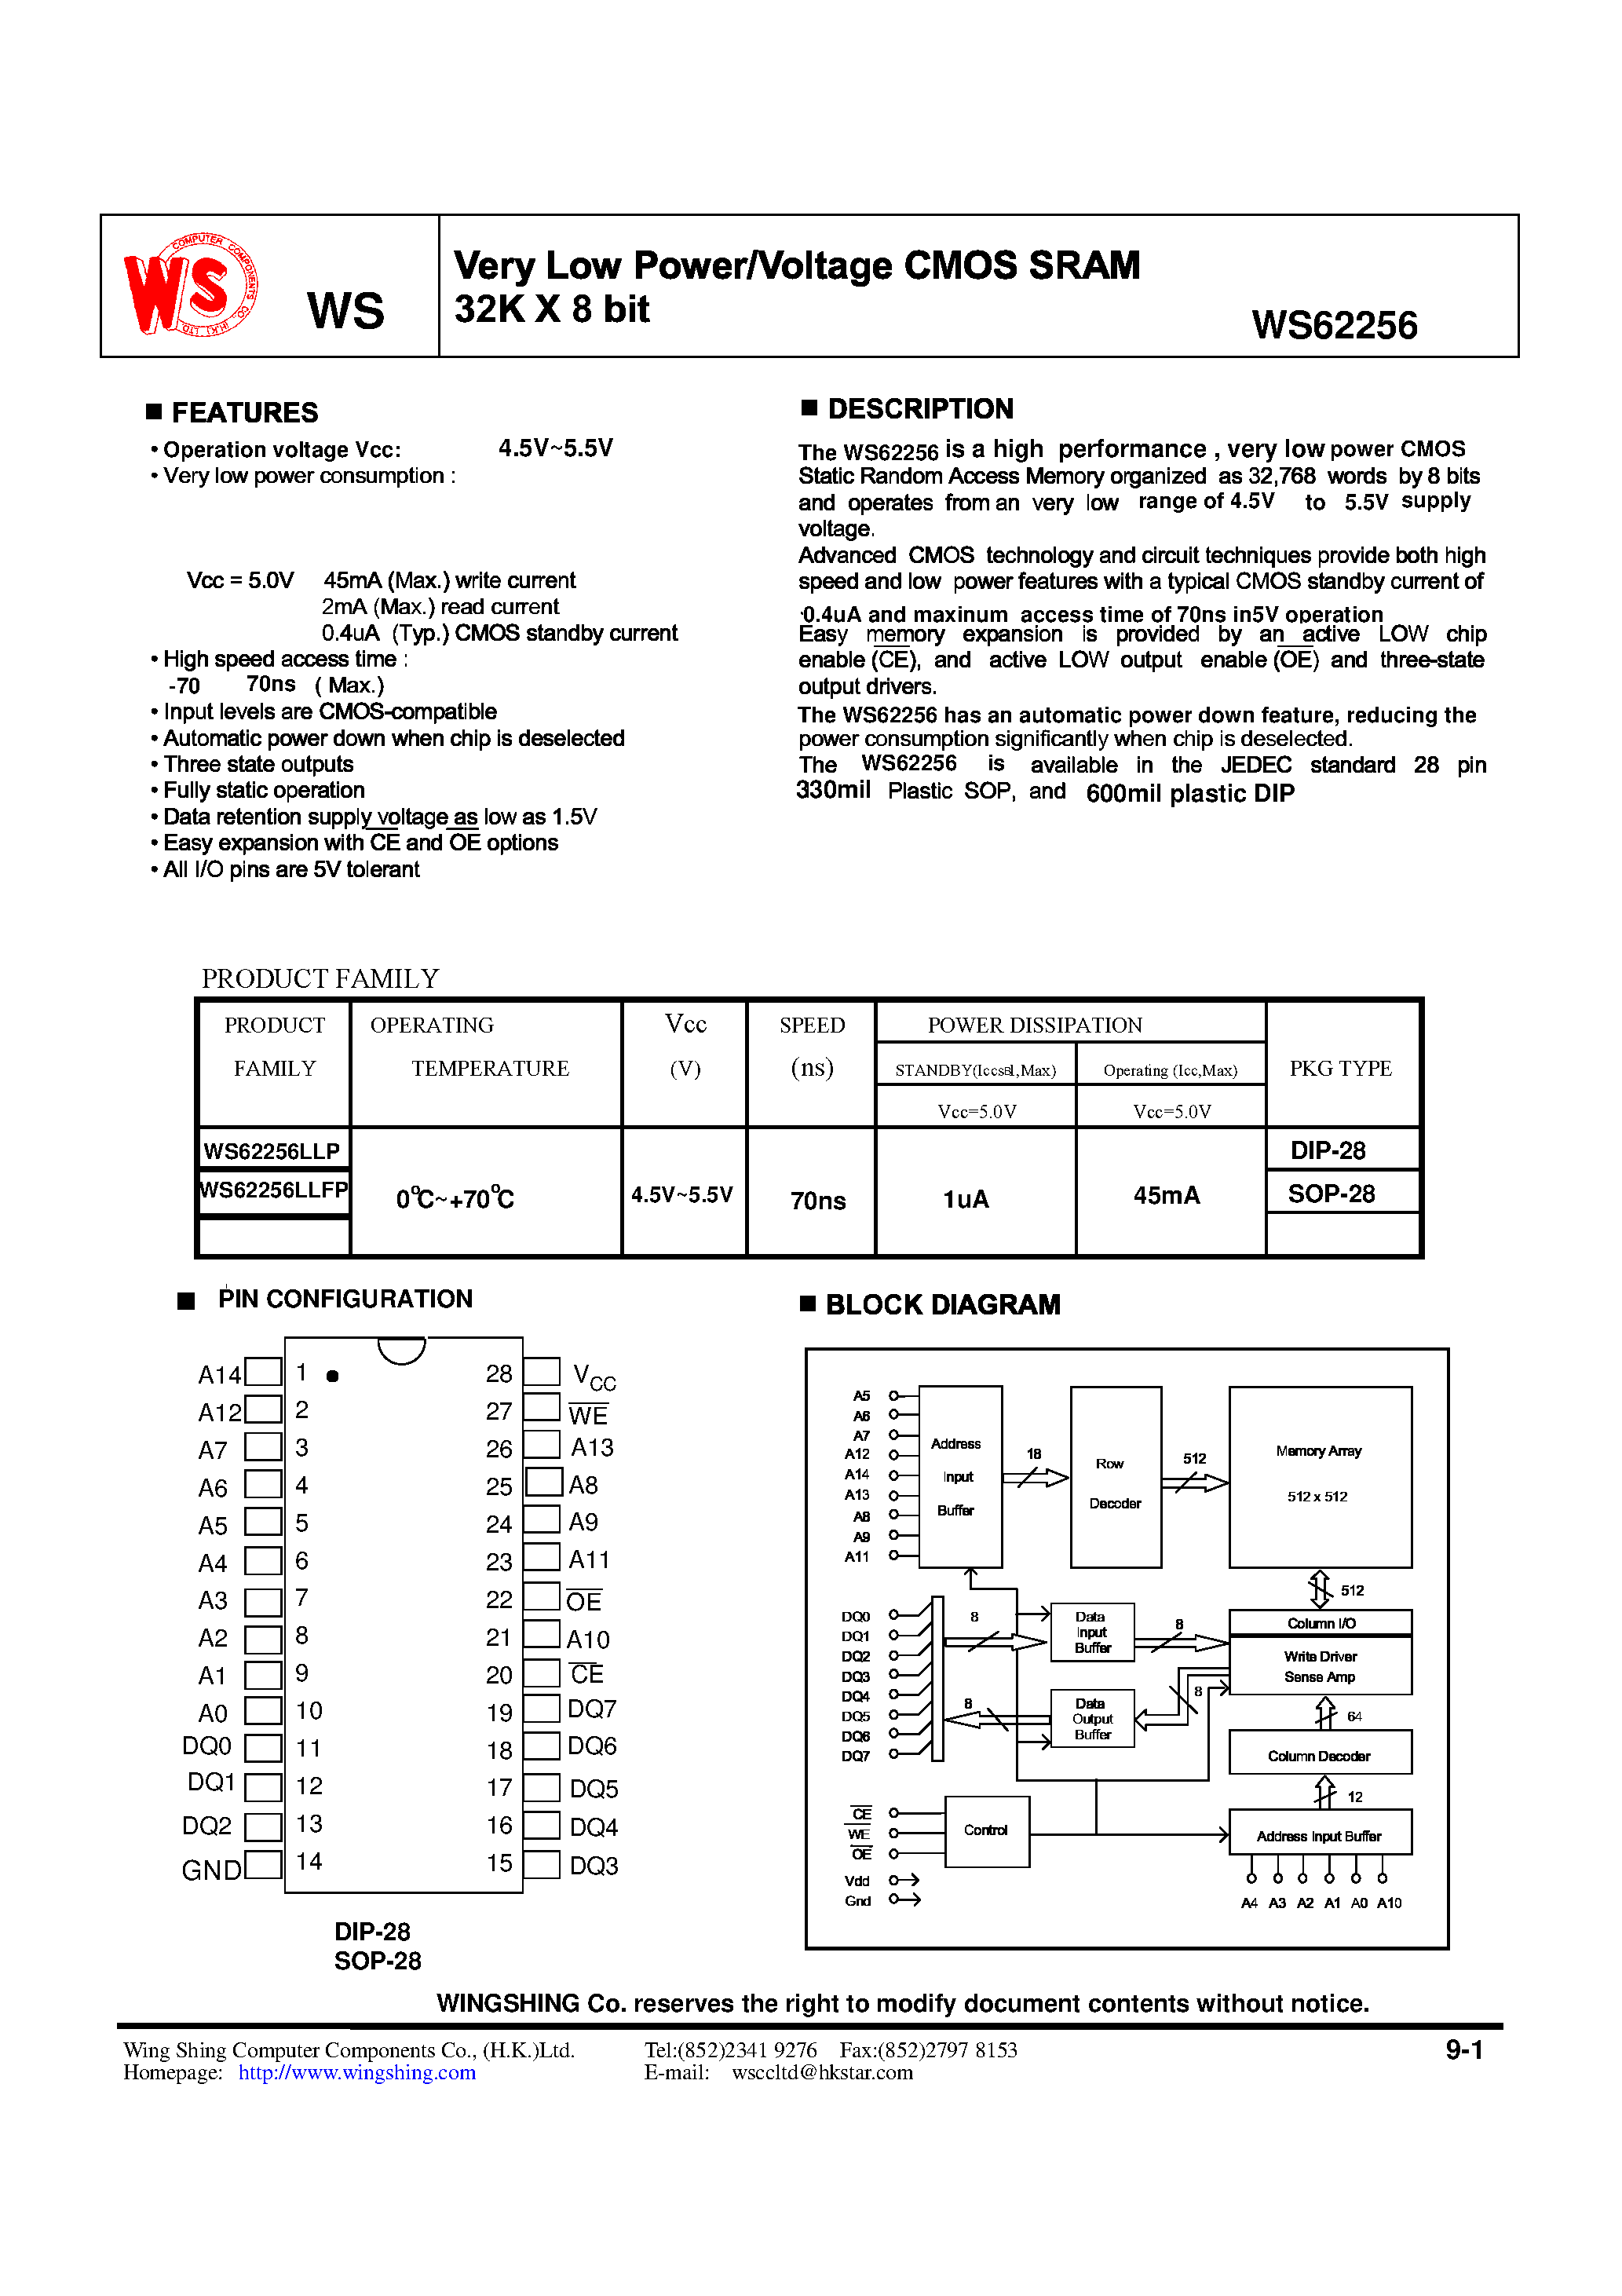 Datasheet WS62256LLP - Very Low Power / Voltage CMOS SRAM 32K X 8bit page 1